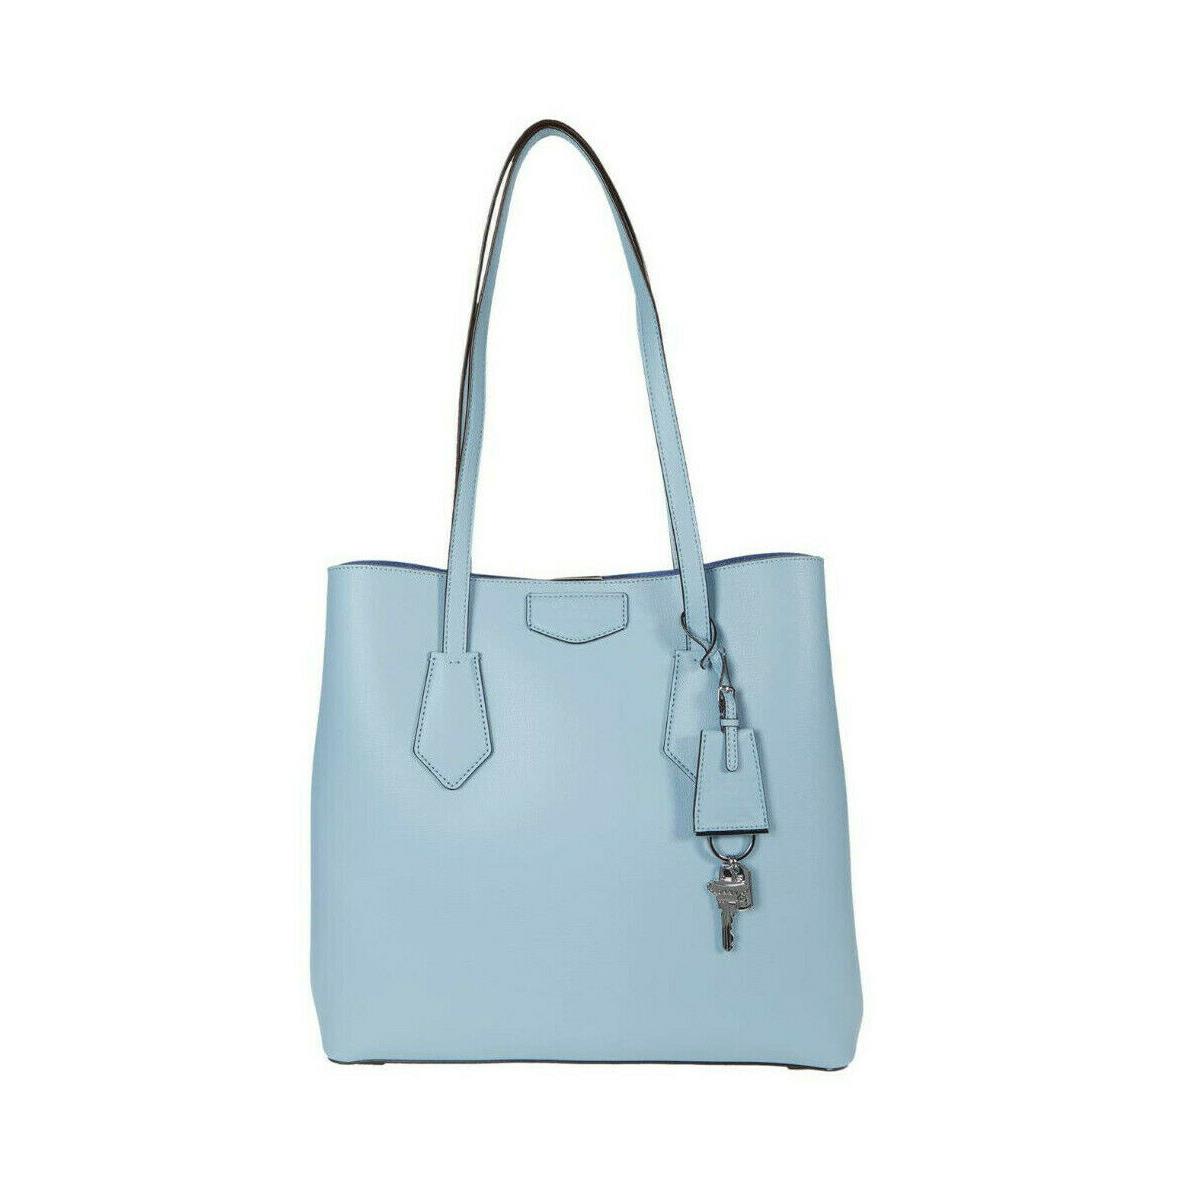 Dkny Sullivan Leather Tote Shoulder Handbag - Exterior: Arctic / Azure